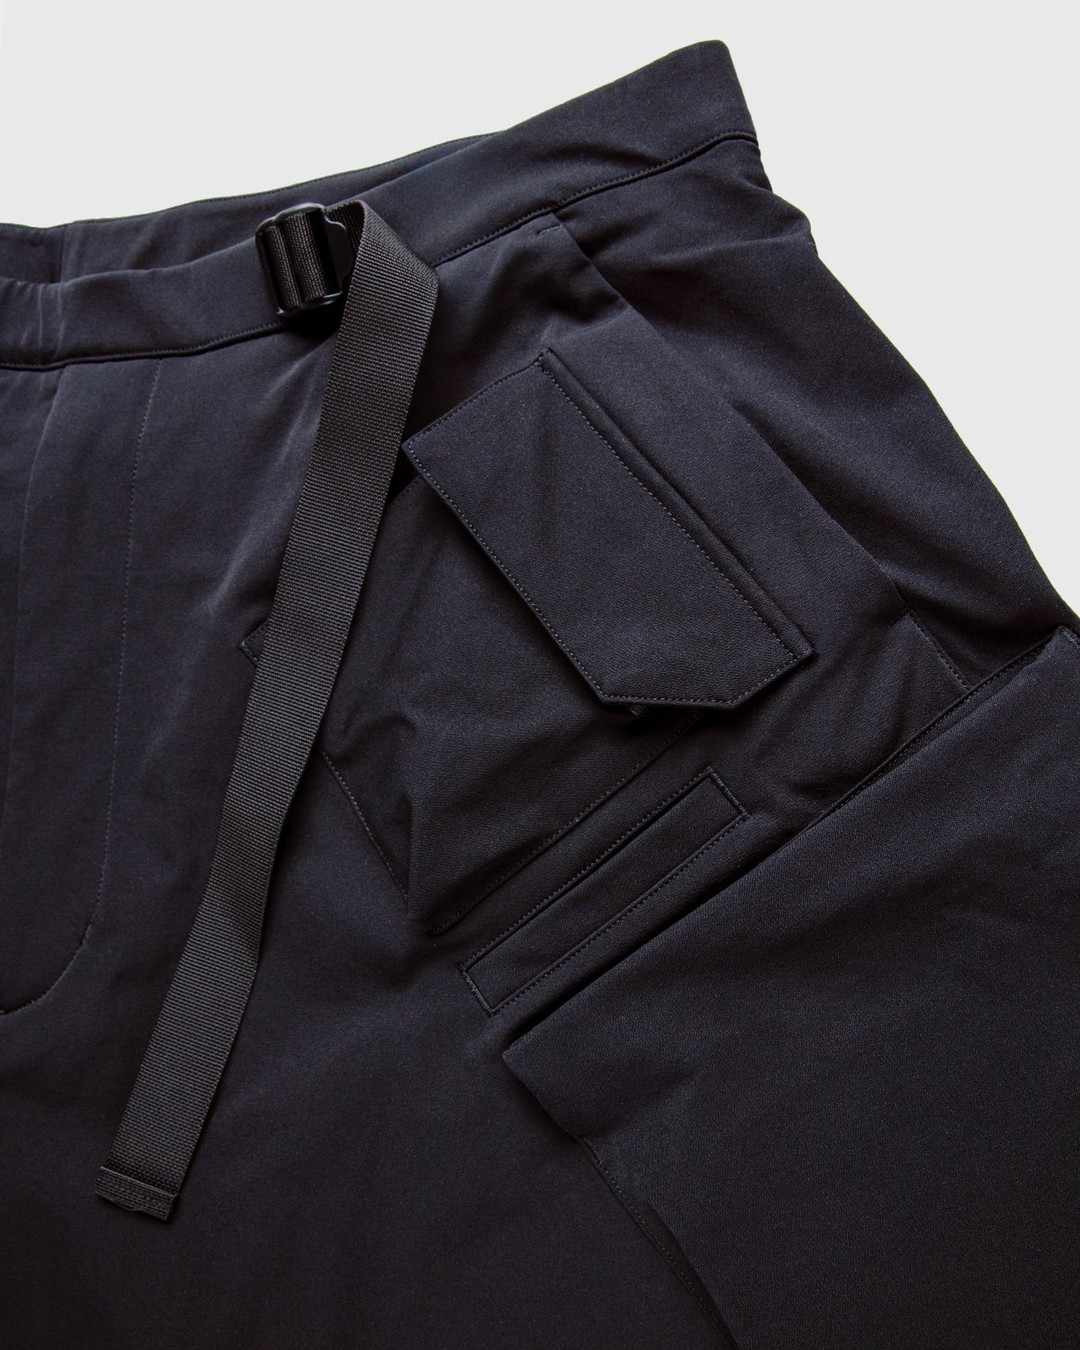 ACRONYM – P30A-DS Pants Black - Pants - Black - Image 5